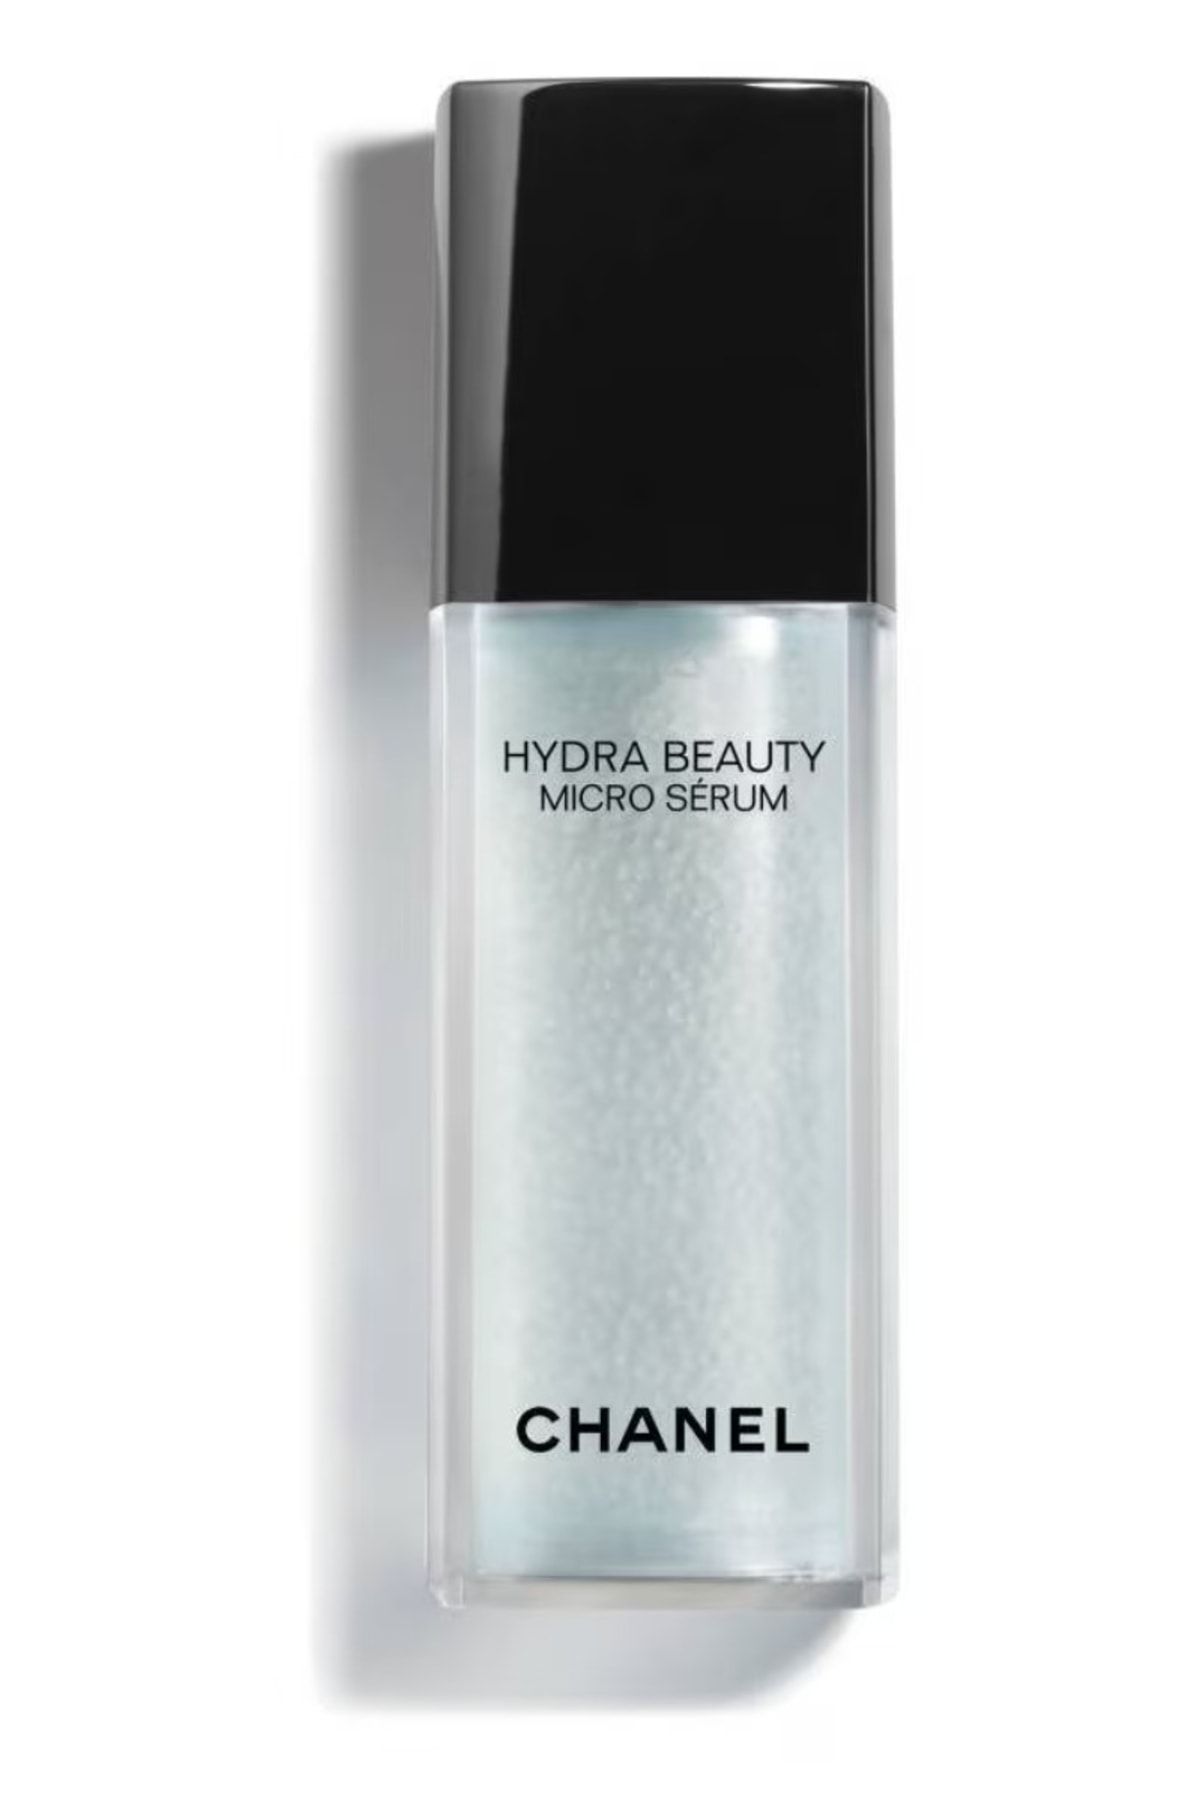 Chanel Hydra Beauty Micro Serum Intense Replenishing Hydration 50 Ml